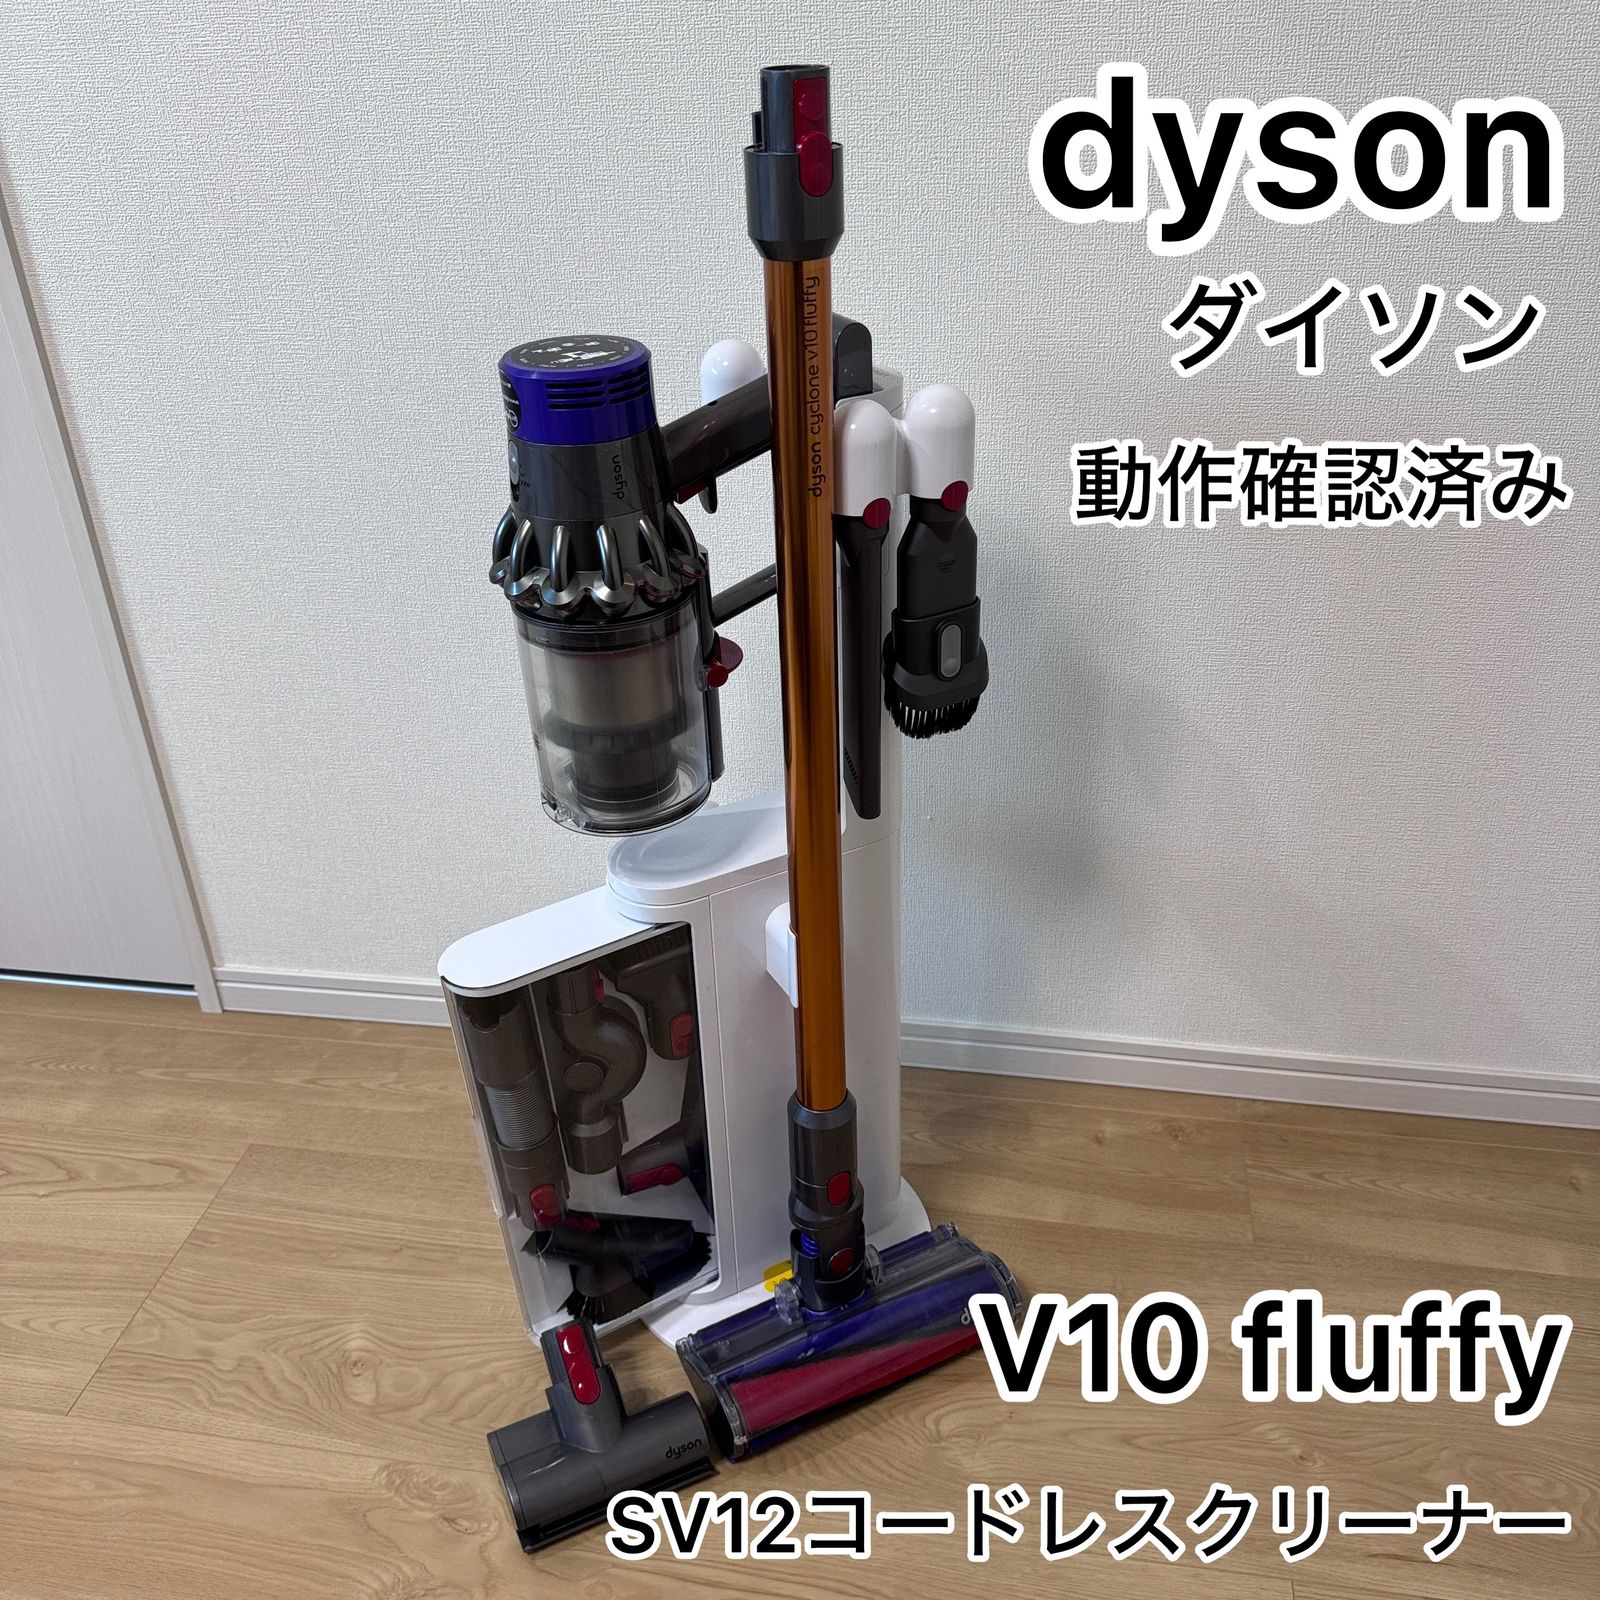 ☆動作確認済み dyson ダイソン サイクロンV10 fluffy SV12コードレス